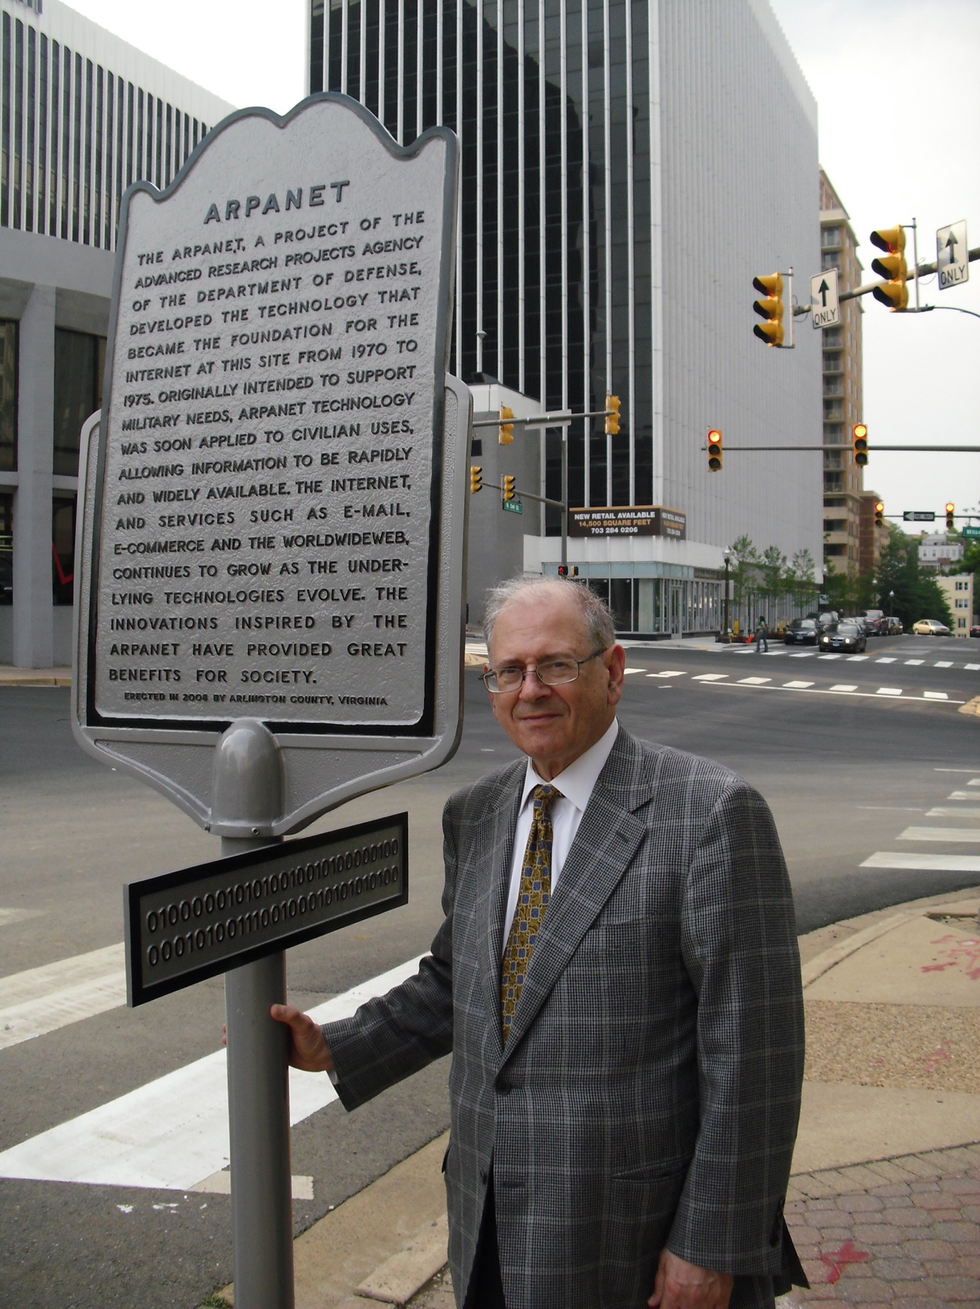 一名身穿西装的男子站在一块标牌前，标牌上写着一段文字。 标题“ARPANET”清晰可见。